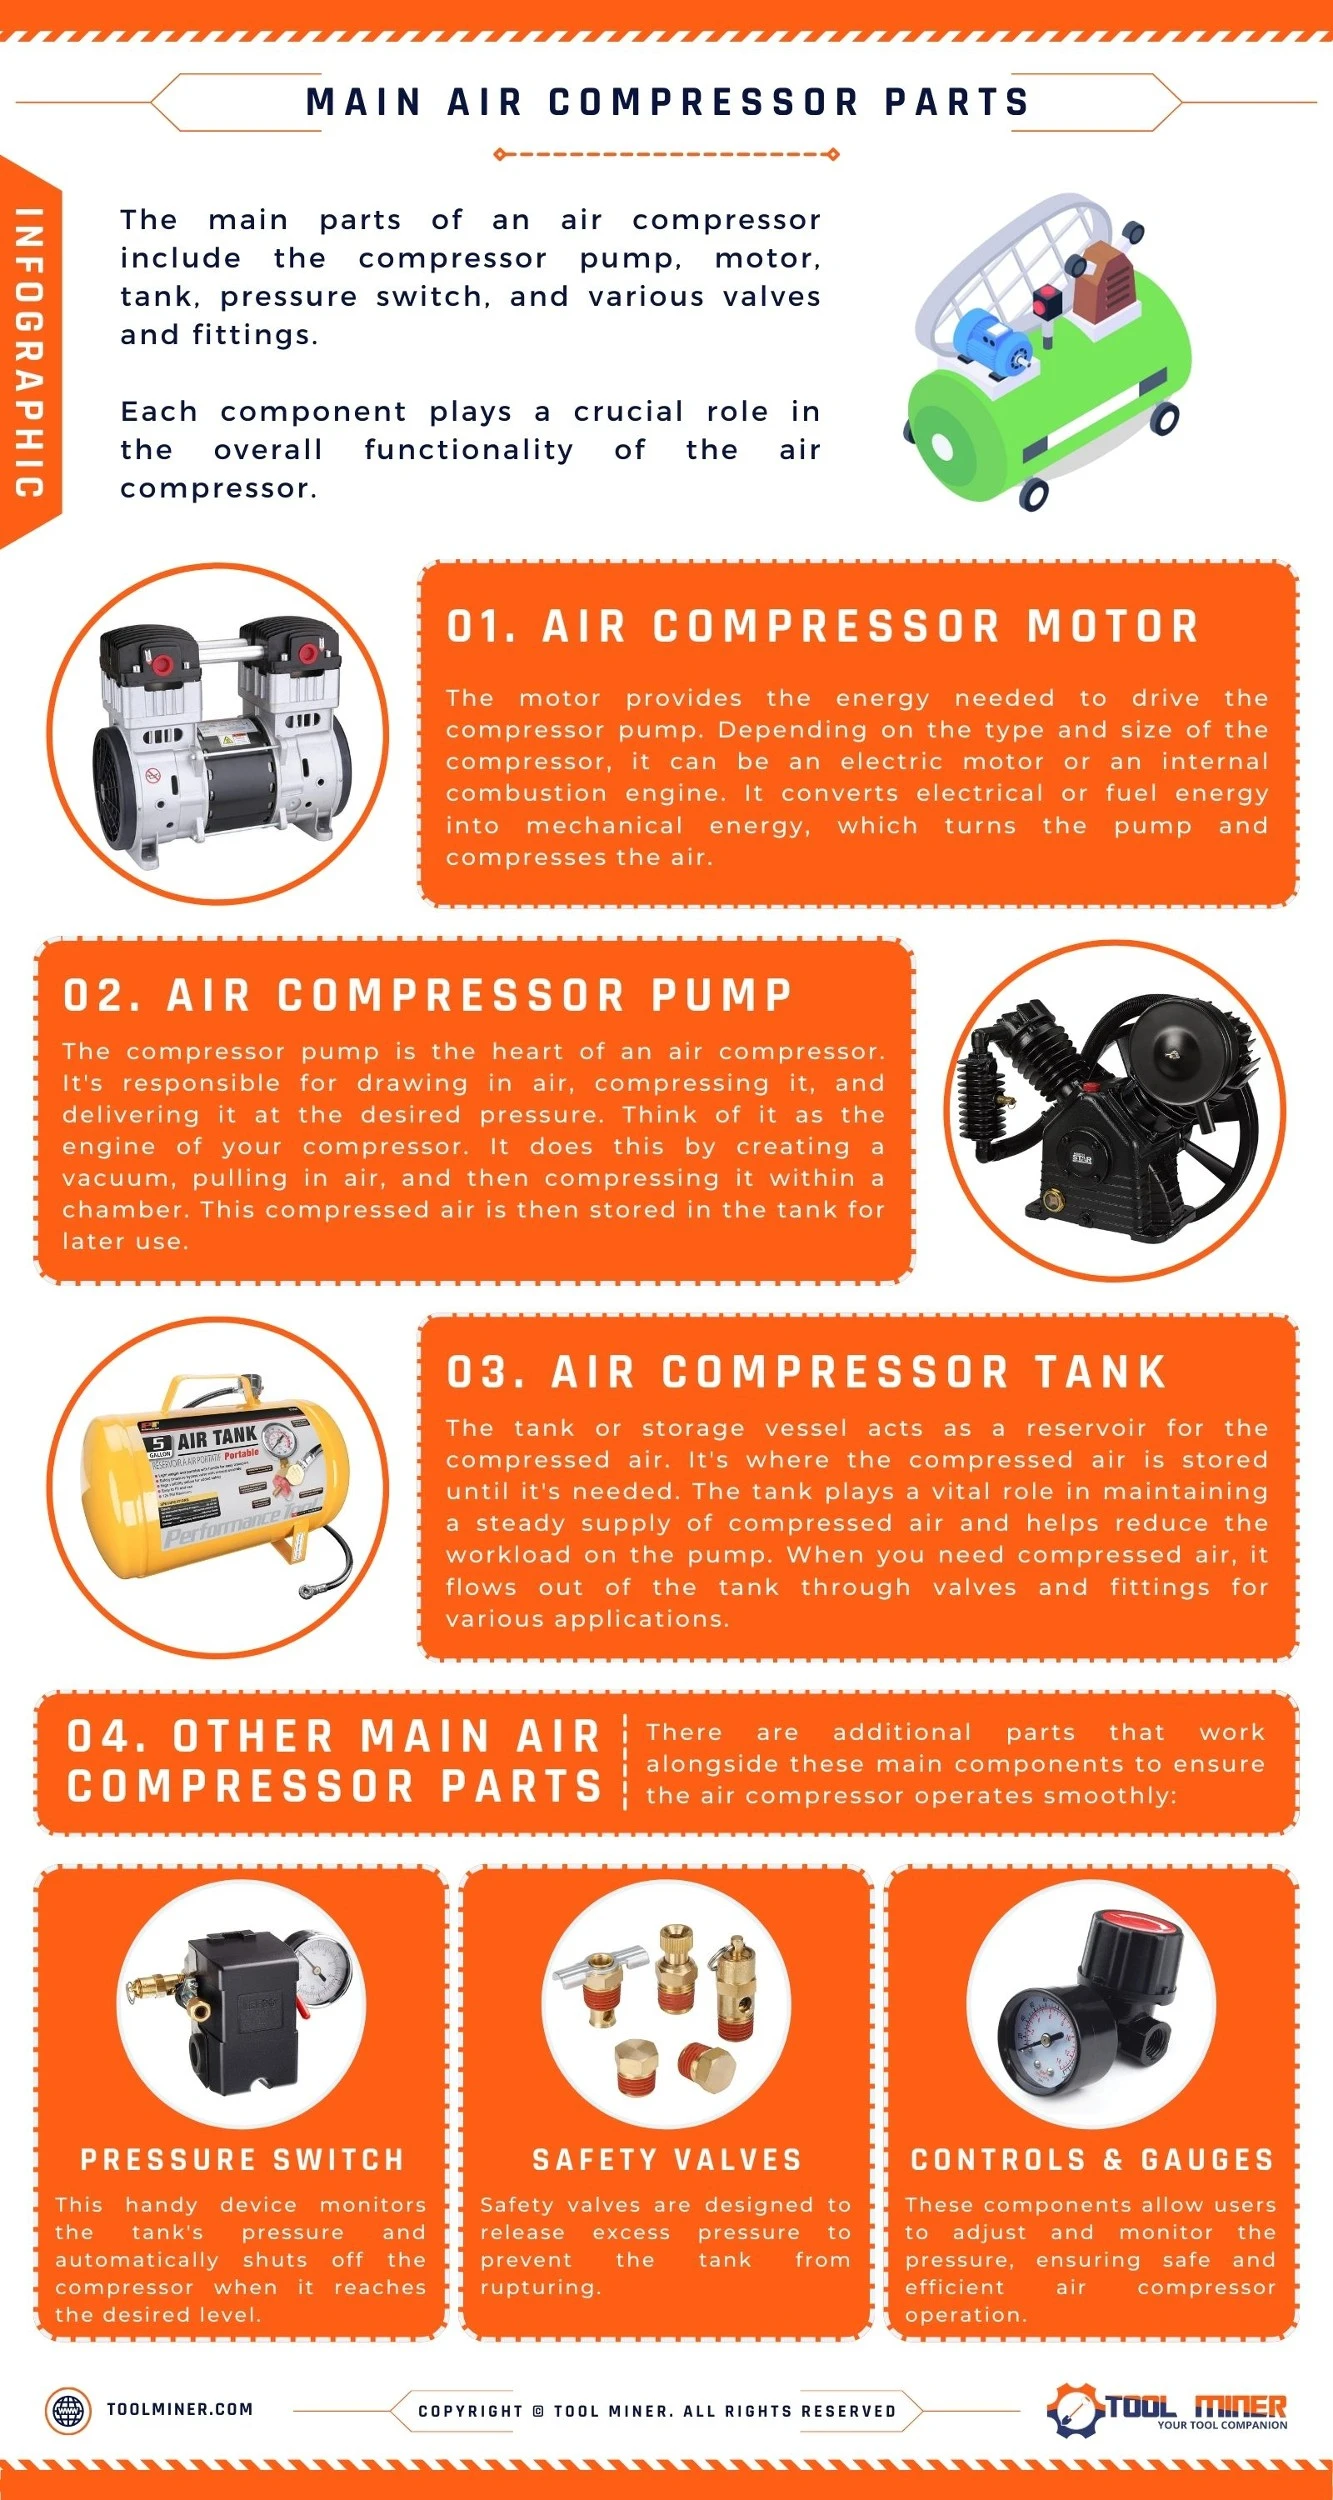 Main-Air-Compressor-Parts